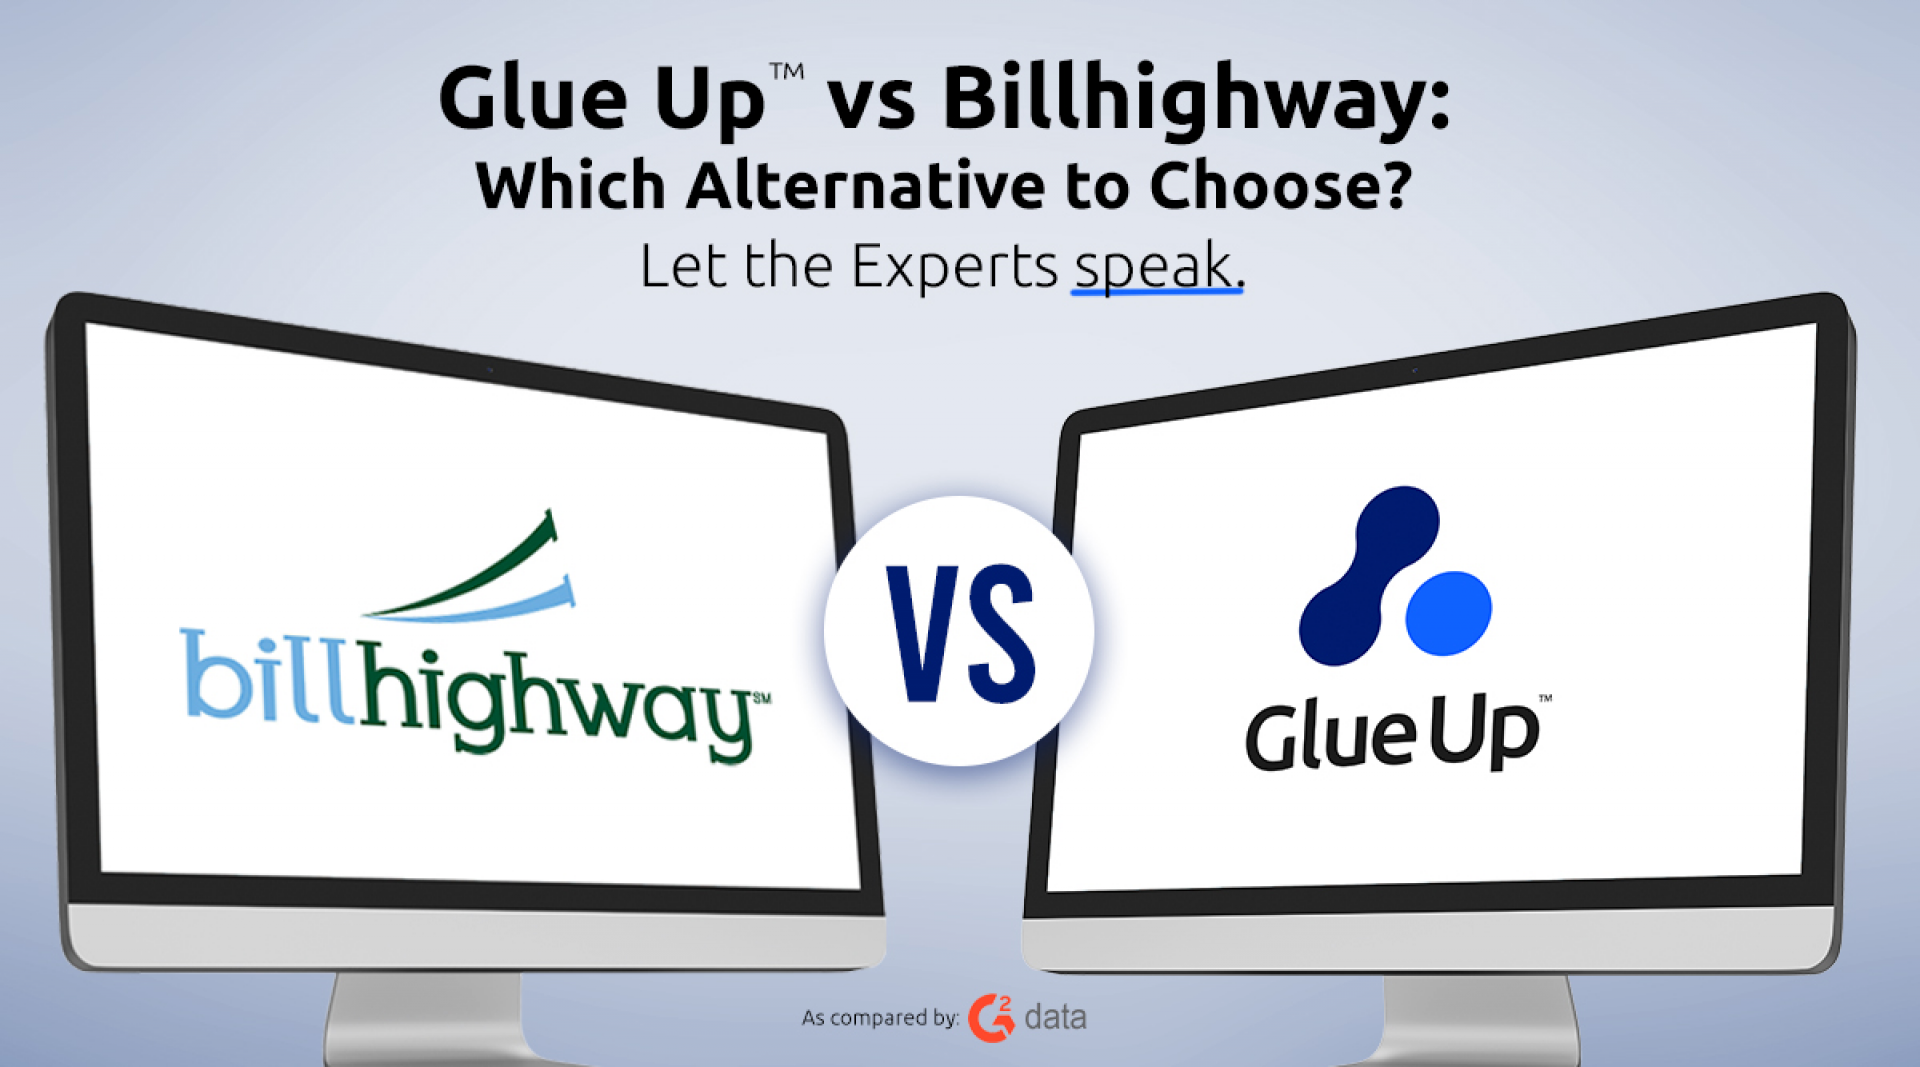 Glue Up vs Billhighway: Which Alternative to Choose?